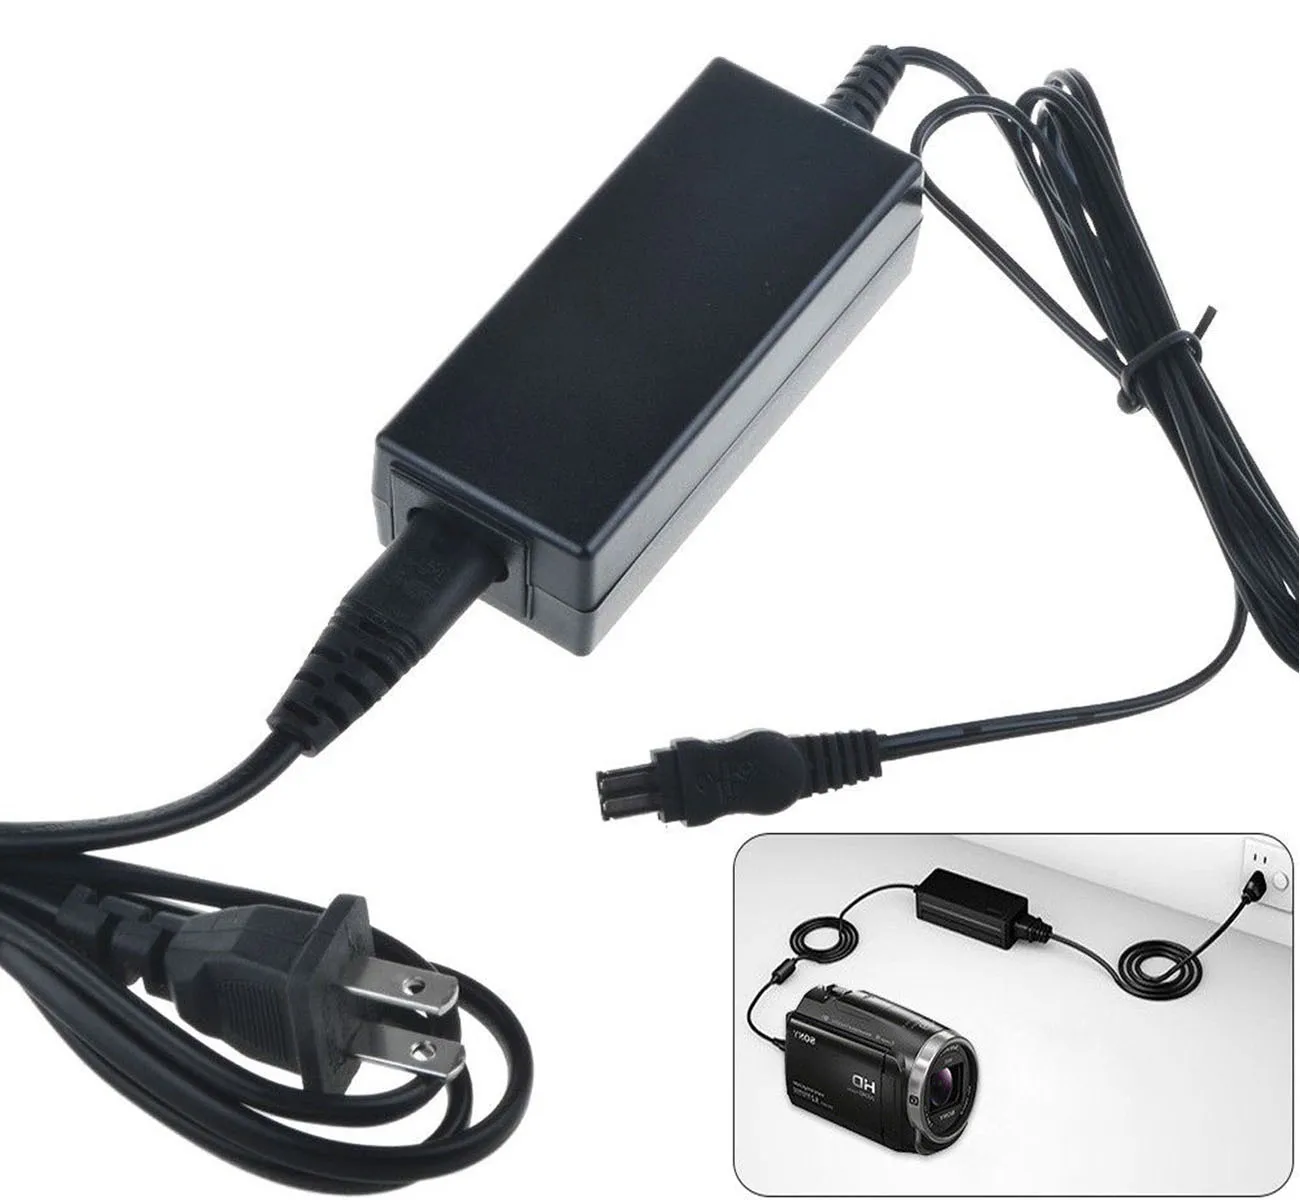 AC Power Adaptor Incarcator pentru Sony DCR-TRV14E, DCR-TRV15E, DCR-TRV16E, DCR-TRV17E, DCR-TRV18E, DCR-TRV19E camera Video Handycam